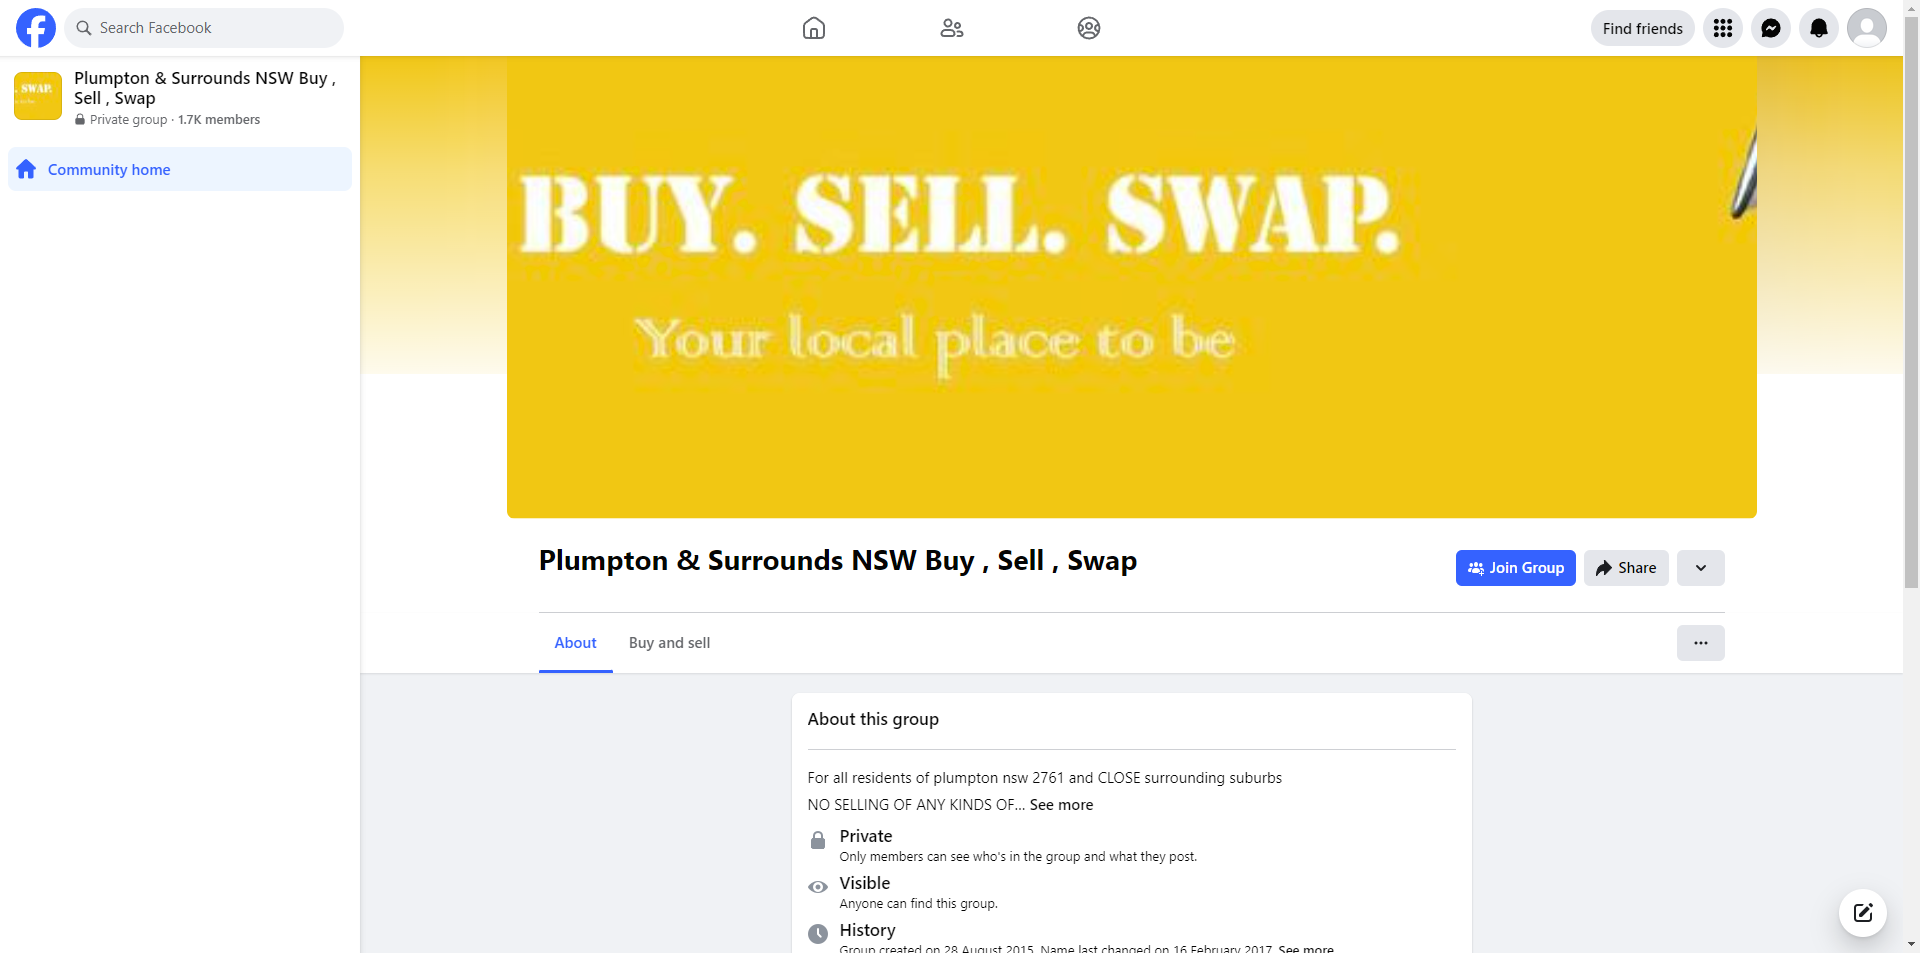 Plumpton & Surrounds NSW Buy, Sell, Swap